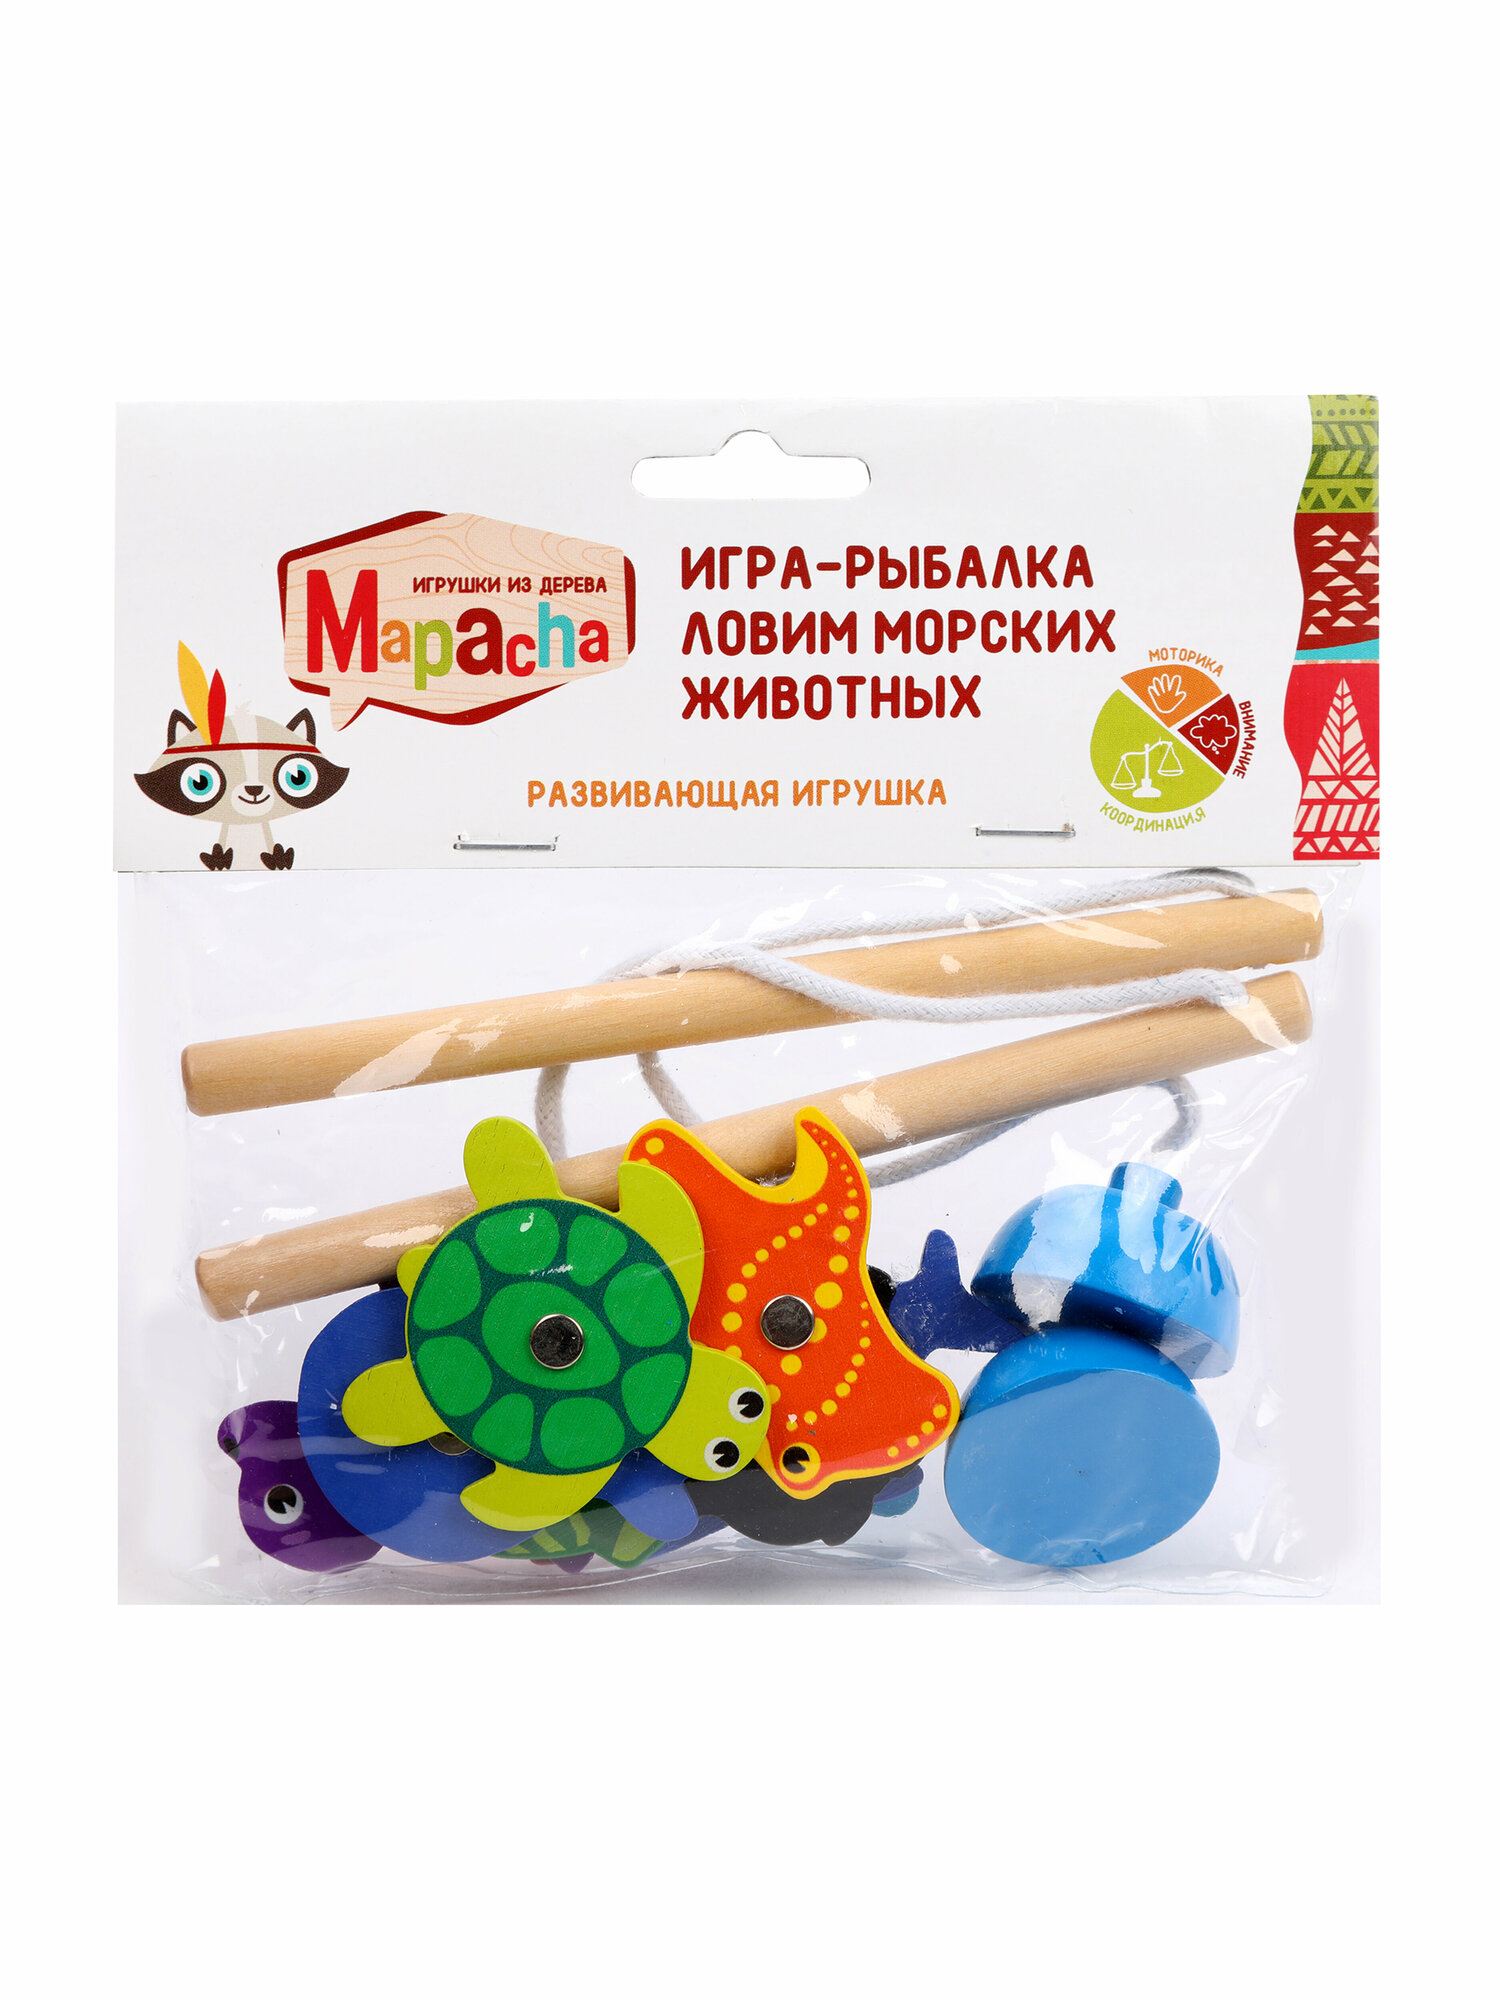 Деревянная игрушка Mapacha - фото №3